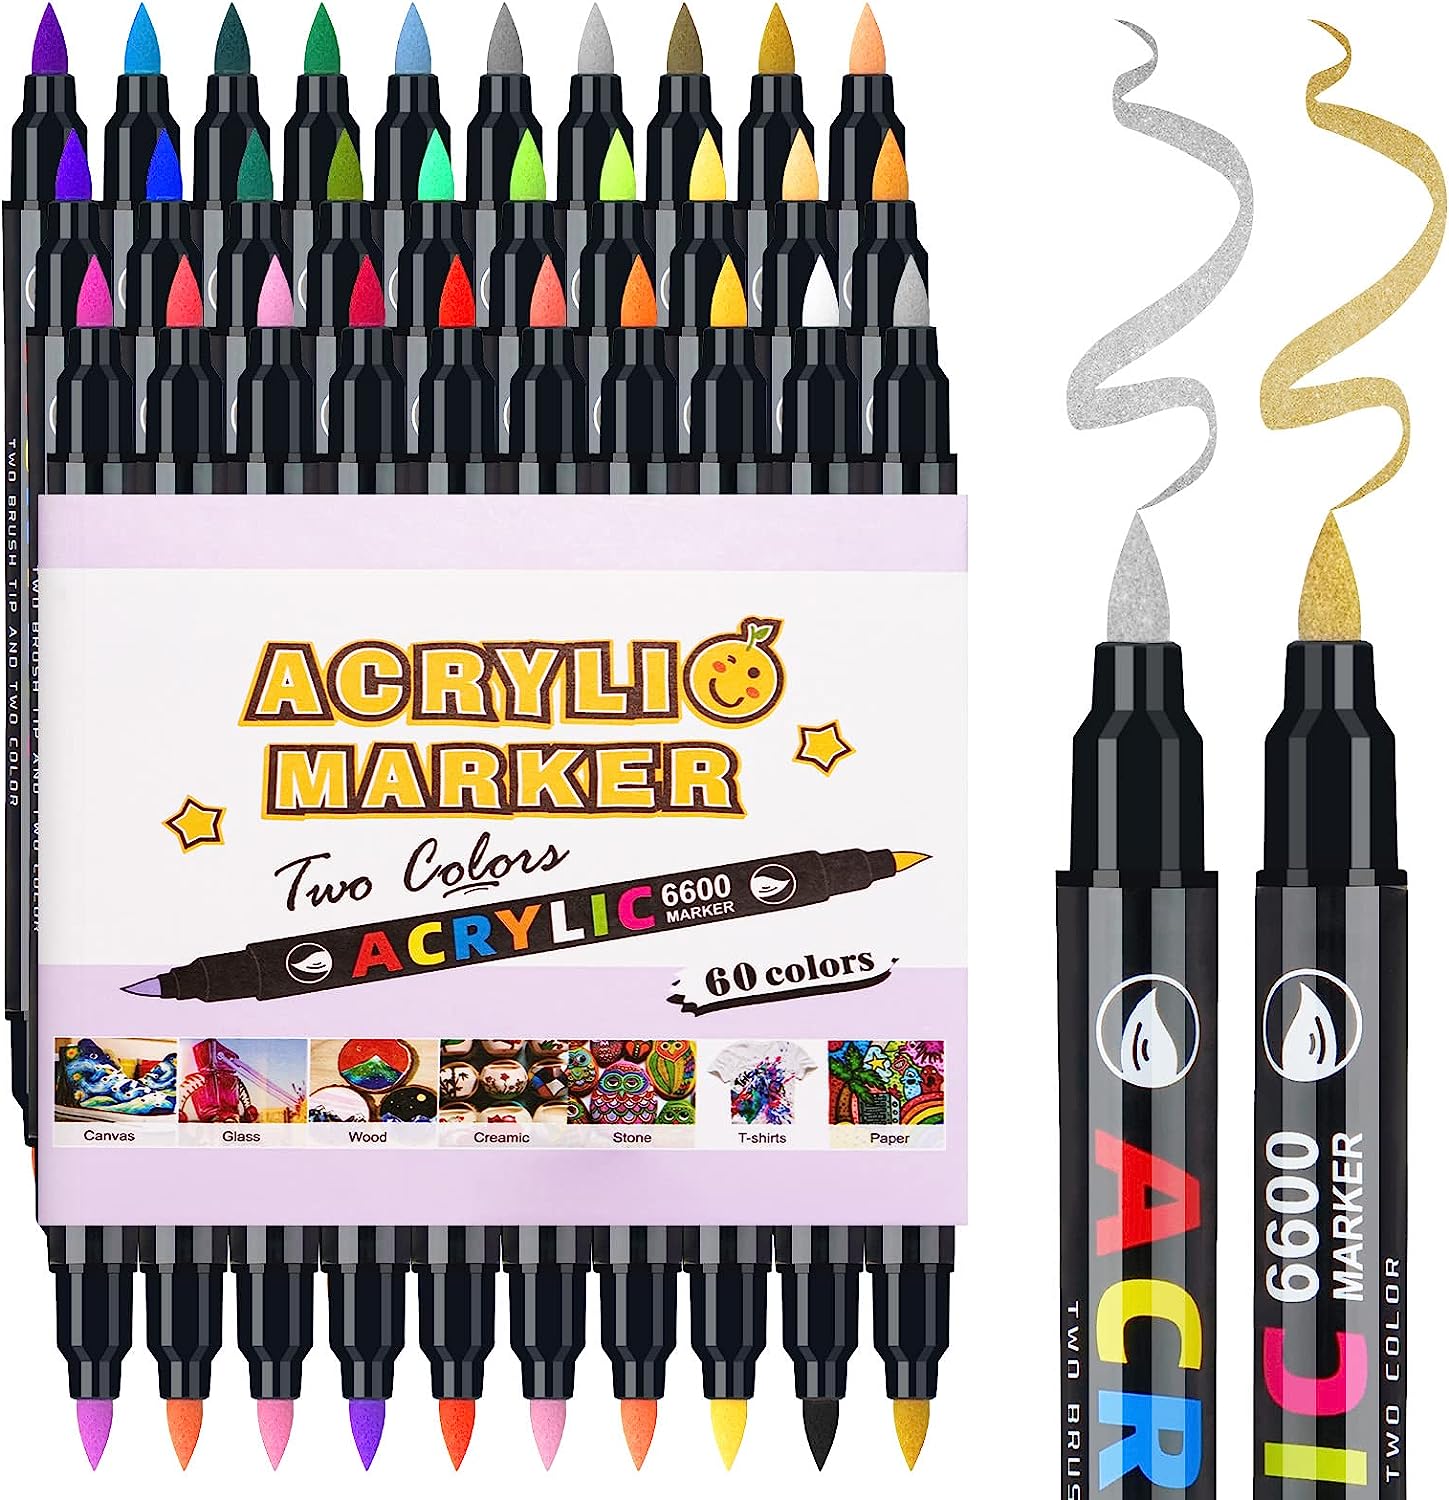 Lightwish Acrylfarbenstifte in 60 Farben, Doppelpinselspitze und Acrylfarbenmarker in zwei Farben